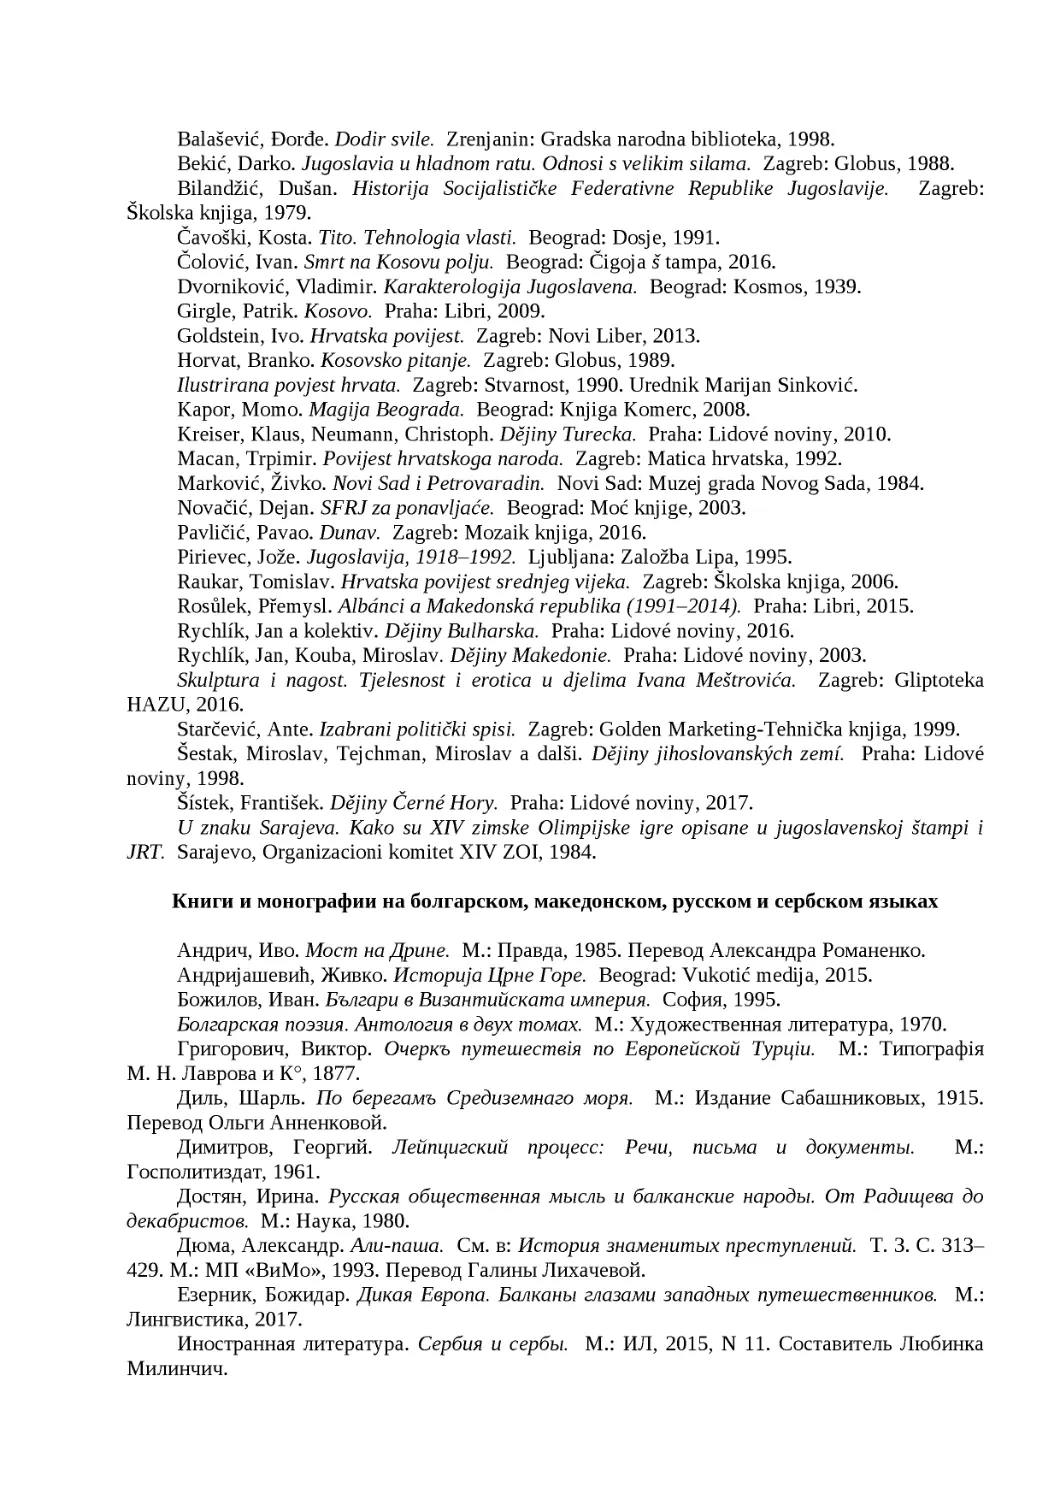 ﻿Книги и монографии на болгарском, македонском, русском и сербском языка